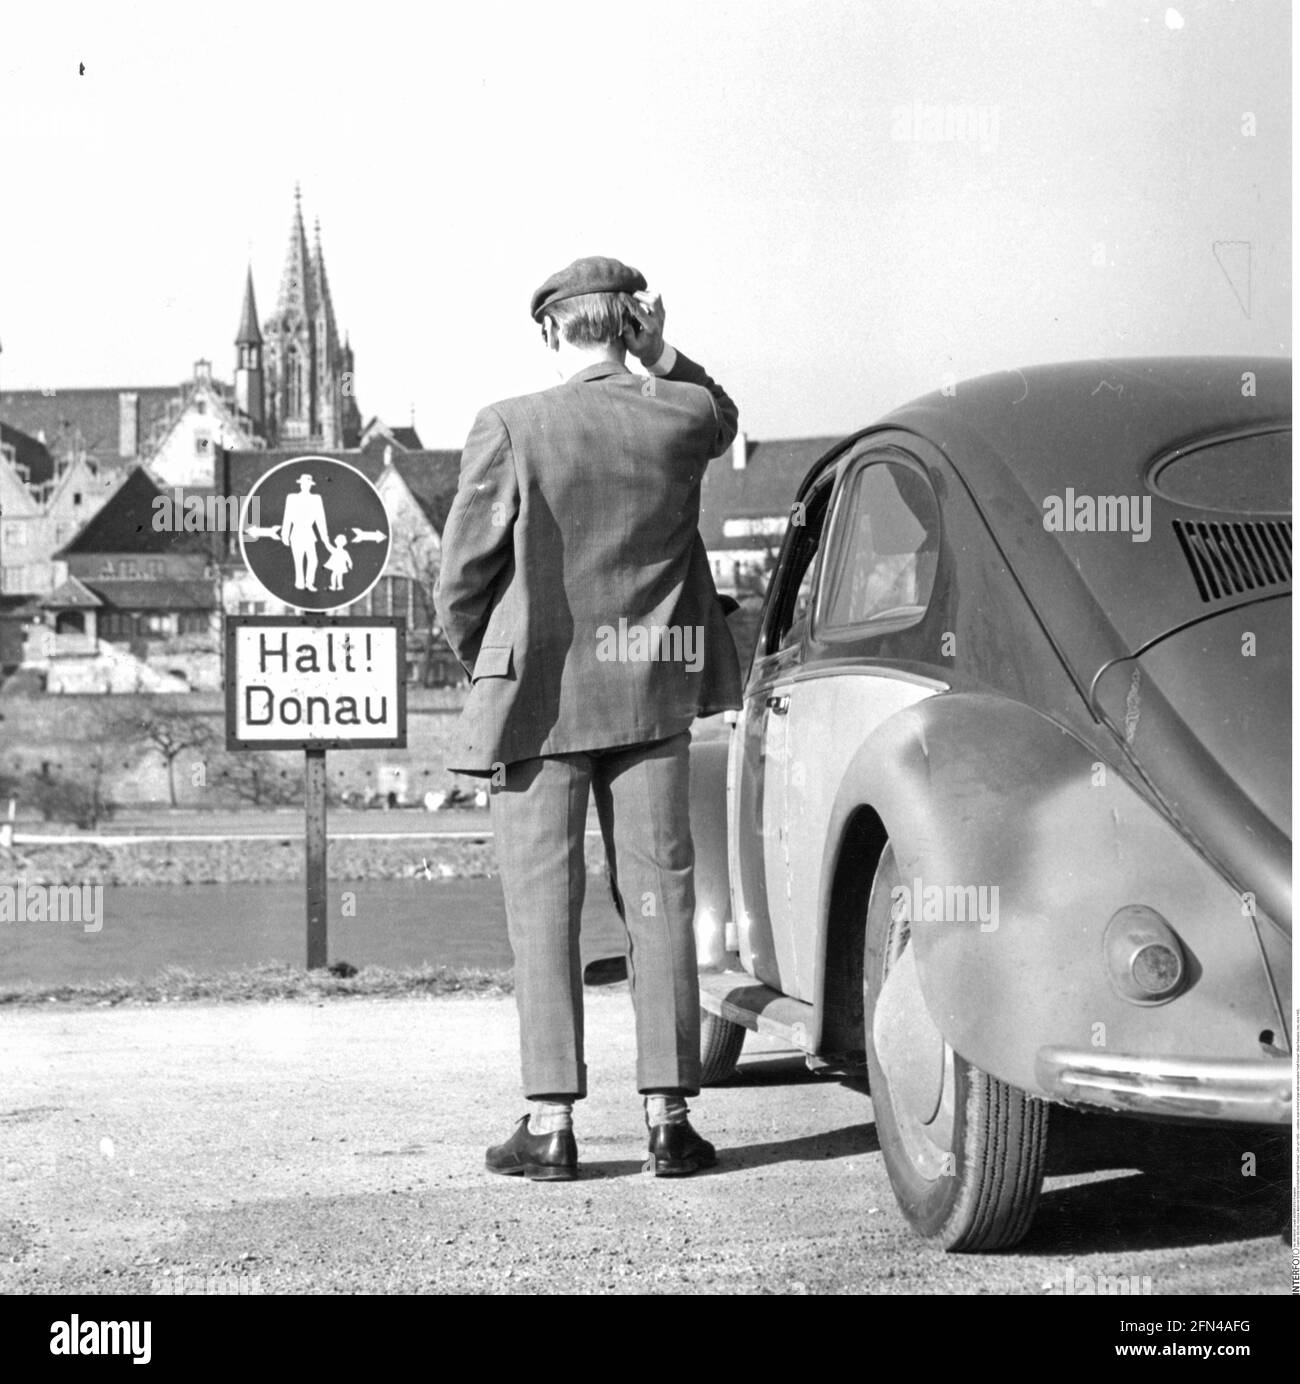 Merkwürdigster Mann vor dem Schild mit der Aufschrift 'Halt! Donau' (Stopp! Donau), Ulm, um 1950, ZUSÄTZLICHE-RIGHTS-CLEARANCE-INFO-NOT-AVAILABLE Stockfoto